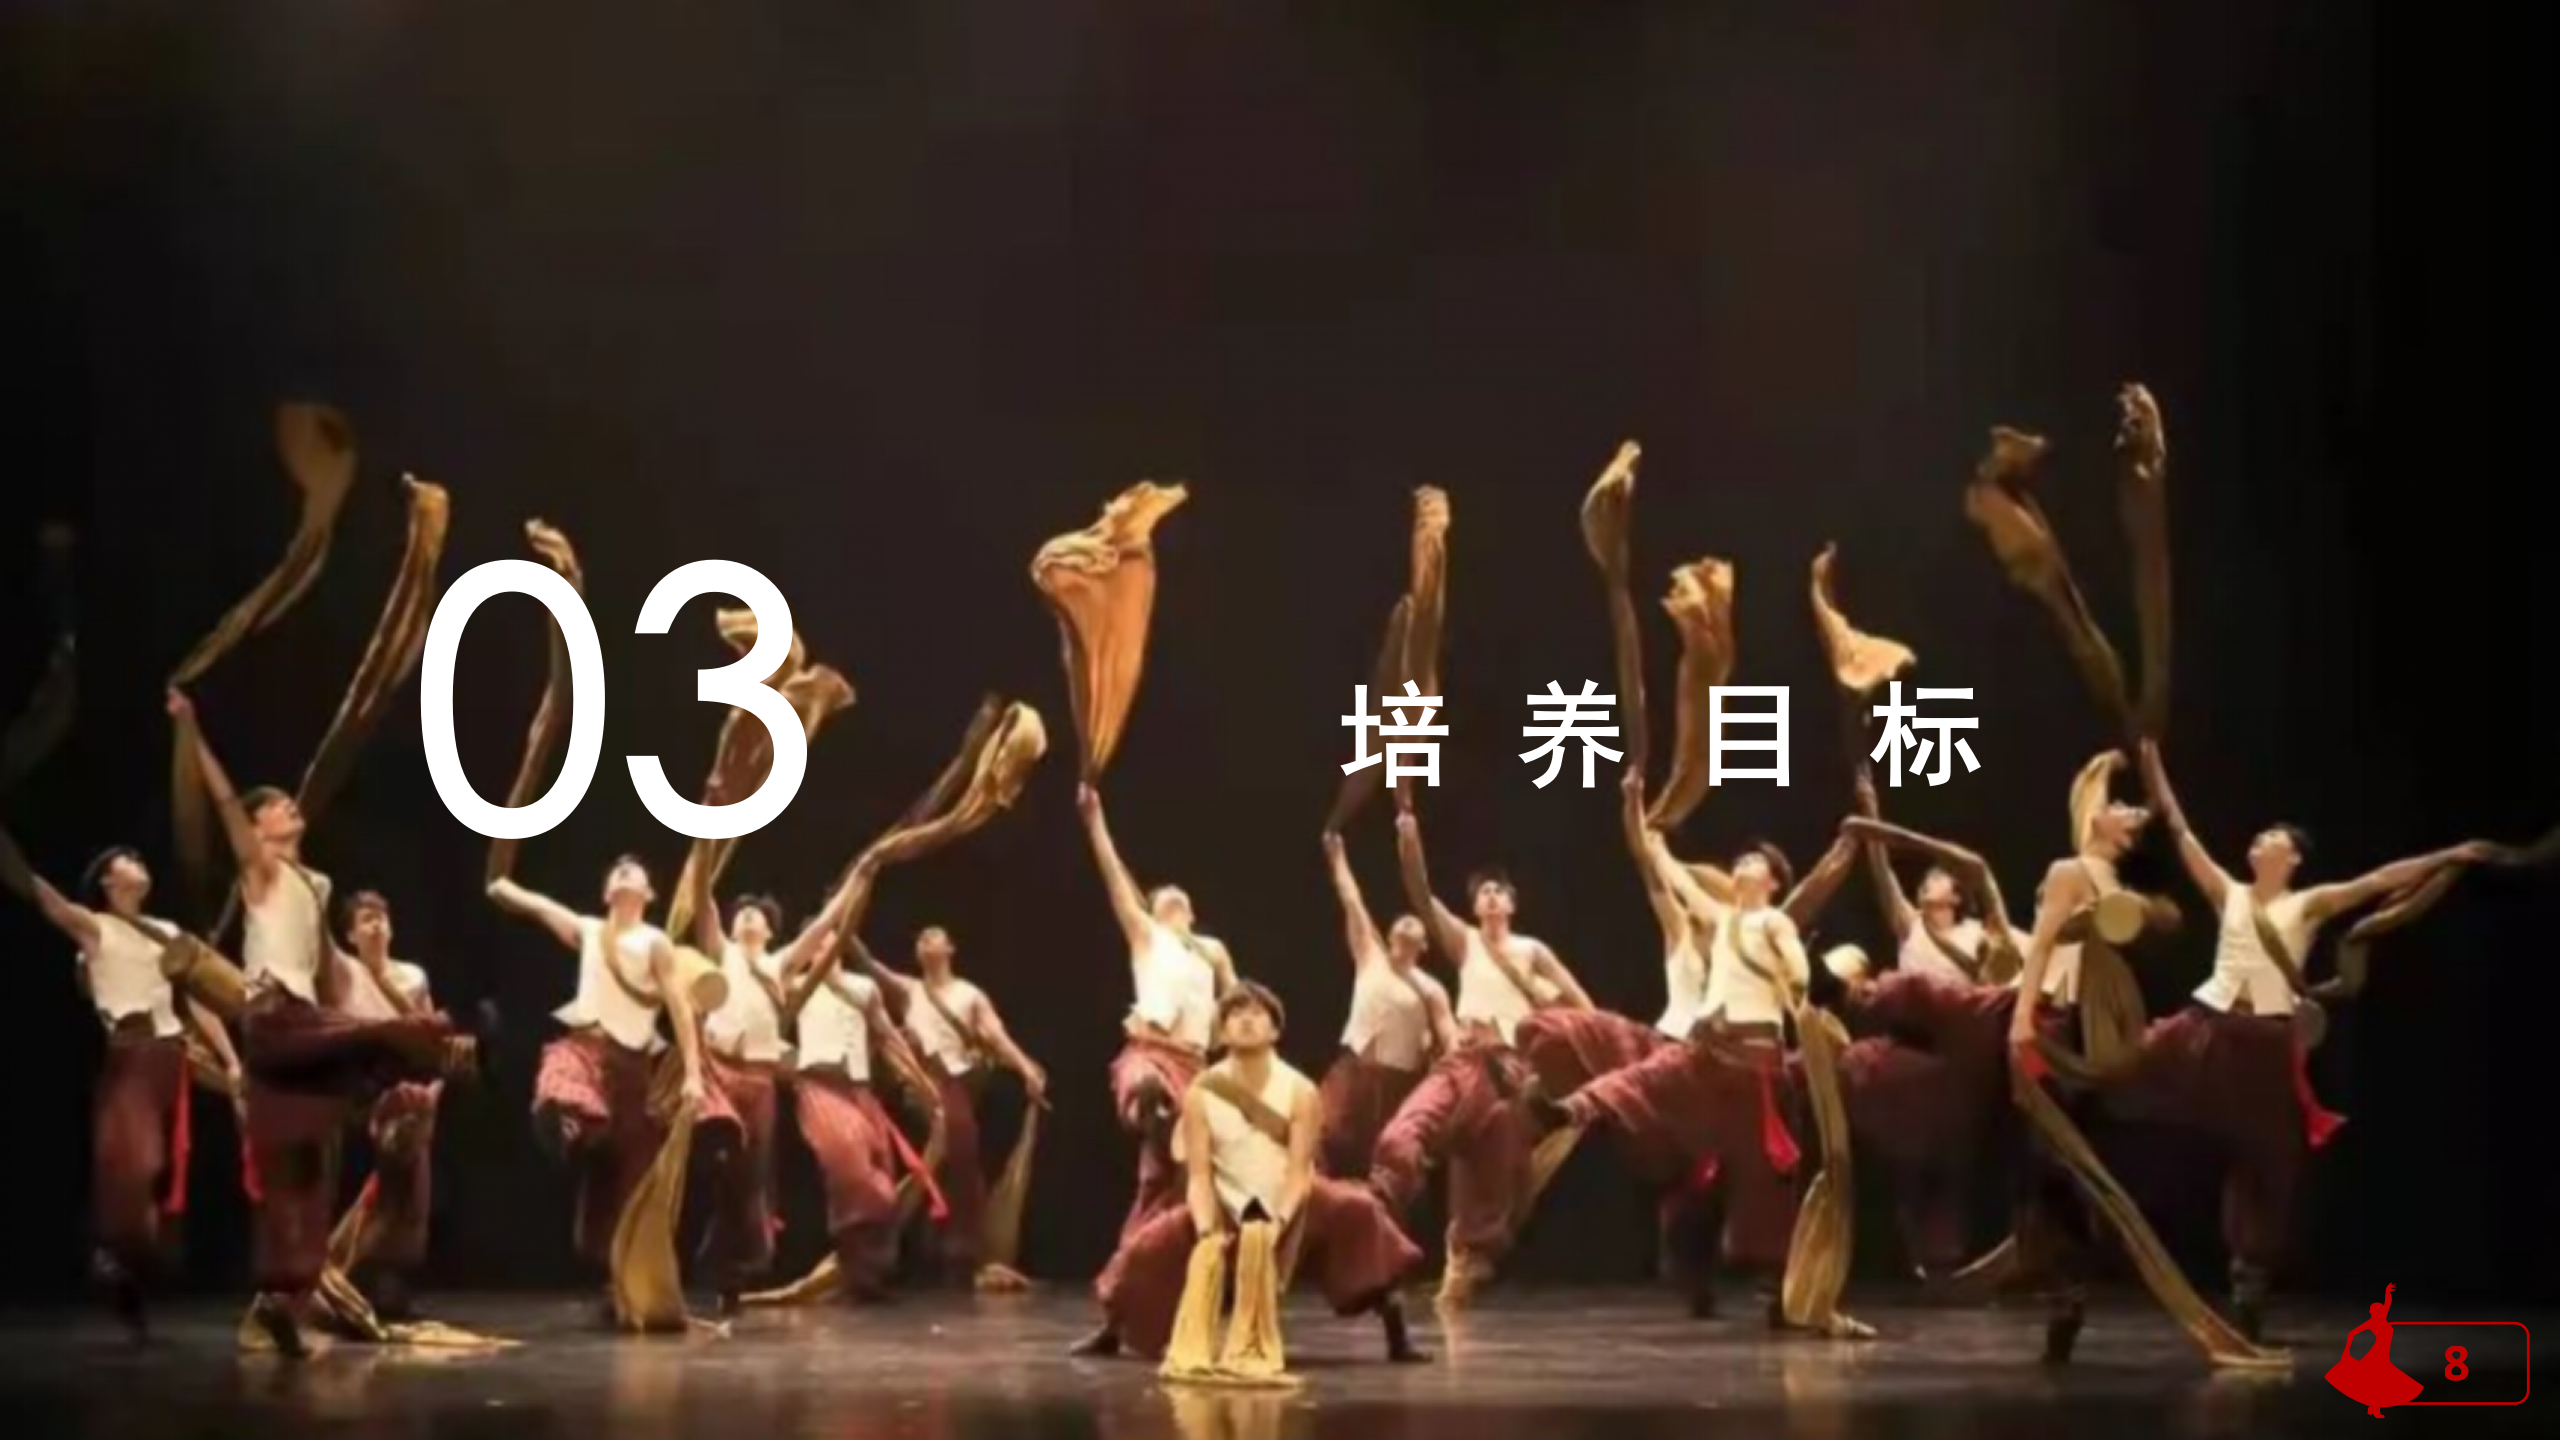 舞蹈表演专业介绍(1)_08.png